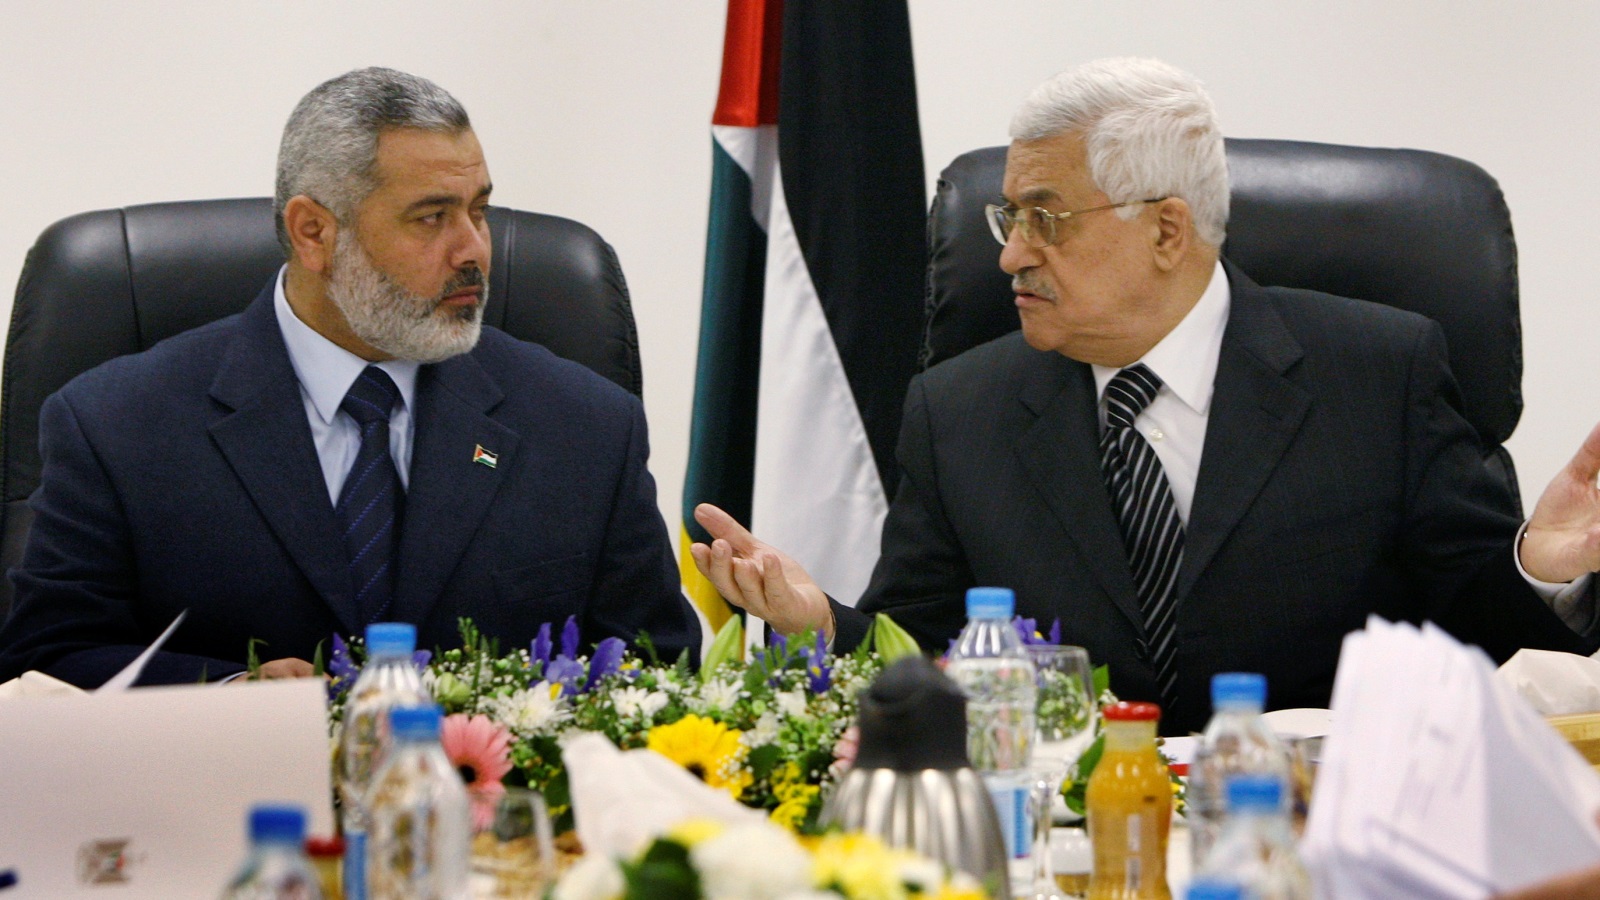 كان بوسع الرئيس عباس أن يتقدّم في طريق المصالحة الوطنية، بما يجعلُ الجبهة الفلسطينية أقوى في وجه الاحتلال، وأمام العالم أجمع، لكنّه أمعن في التنكيل بغزة